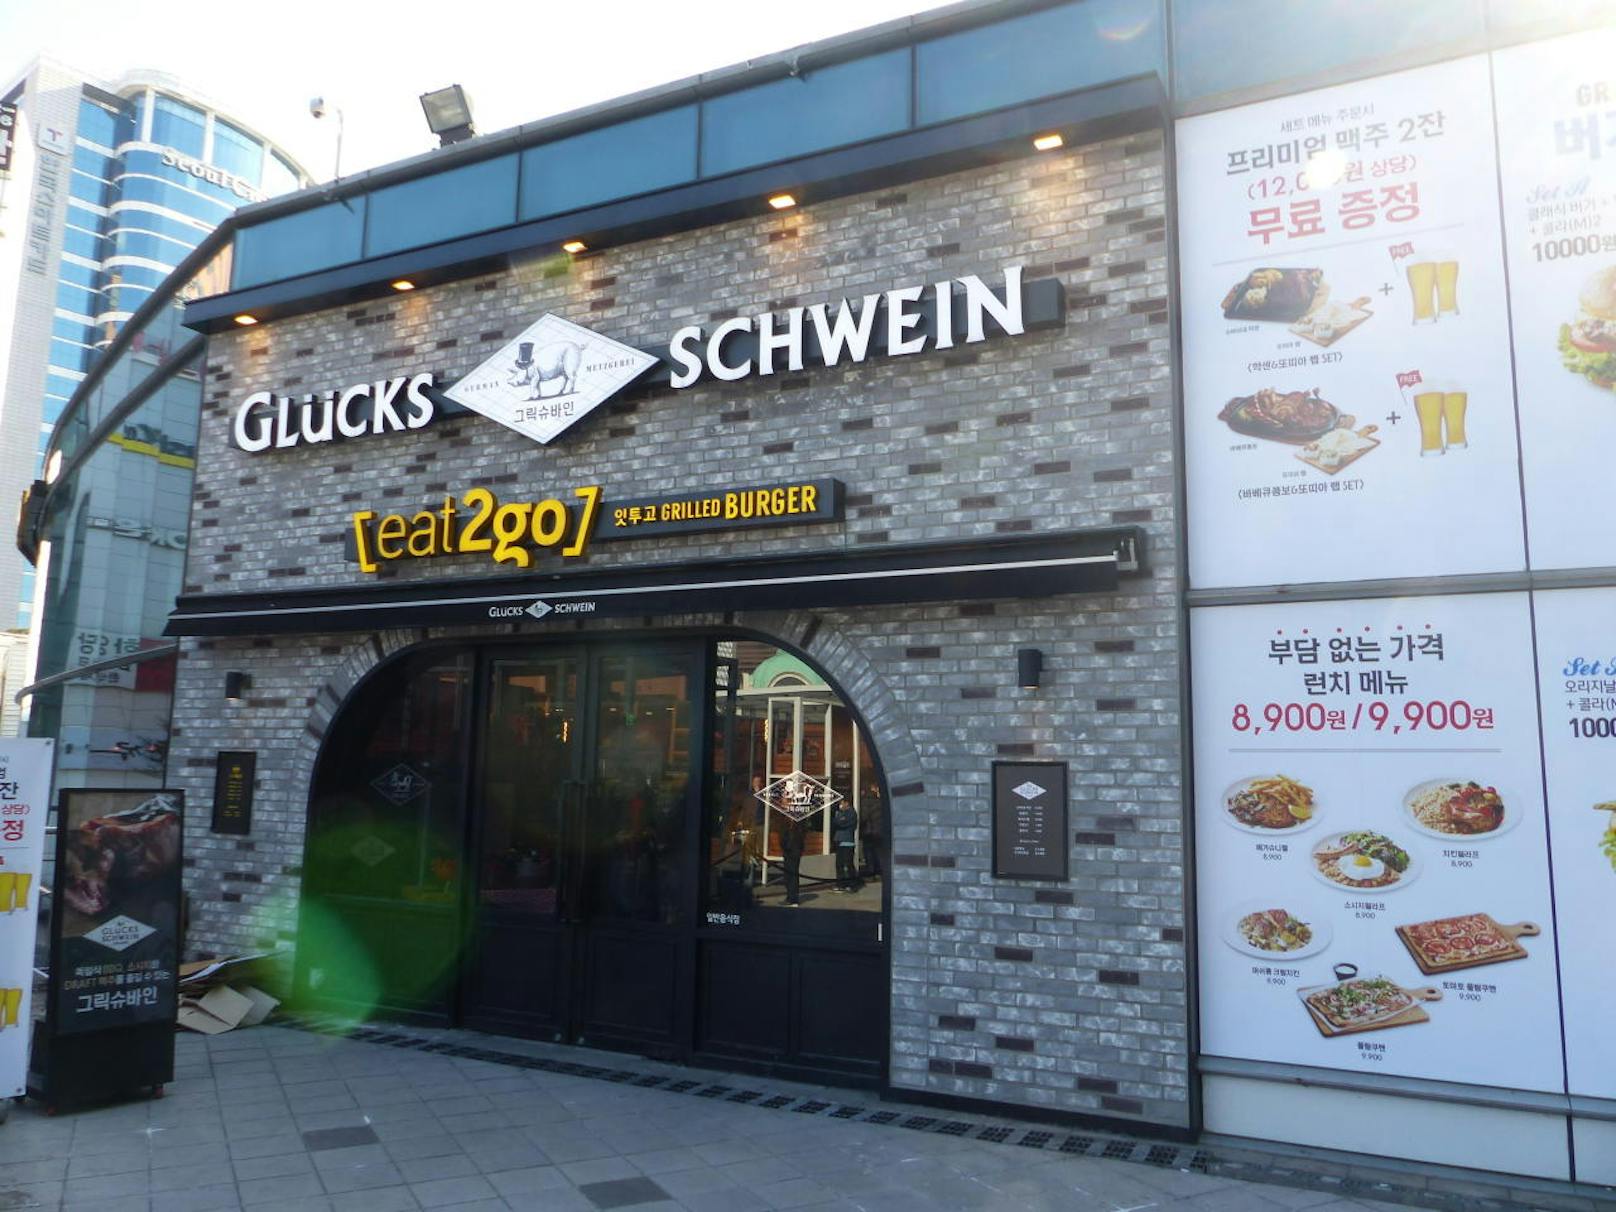 Überhaupt bietet Seoul eine große Auswahl an Lokalen - von traditioneller Küche bis zu Genüssen aus dem Ausland. Ob das Schwein da aber Glück hatte?